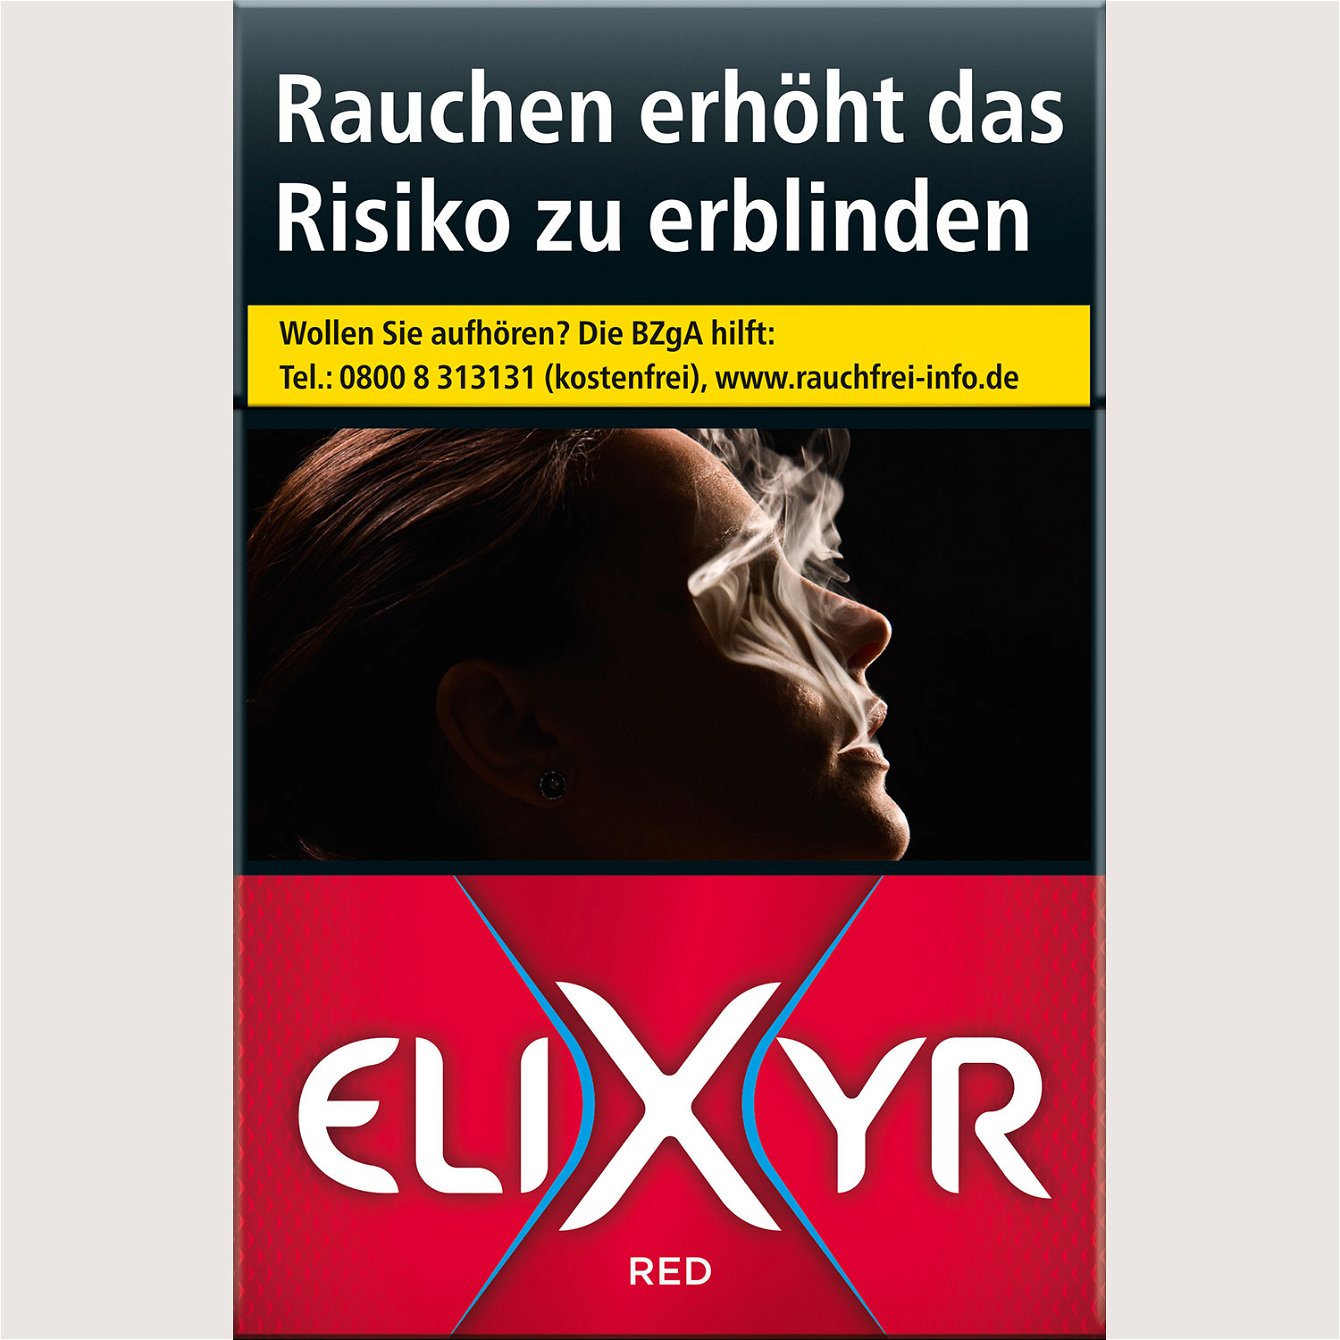 Elixyr Red 7,00 €